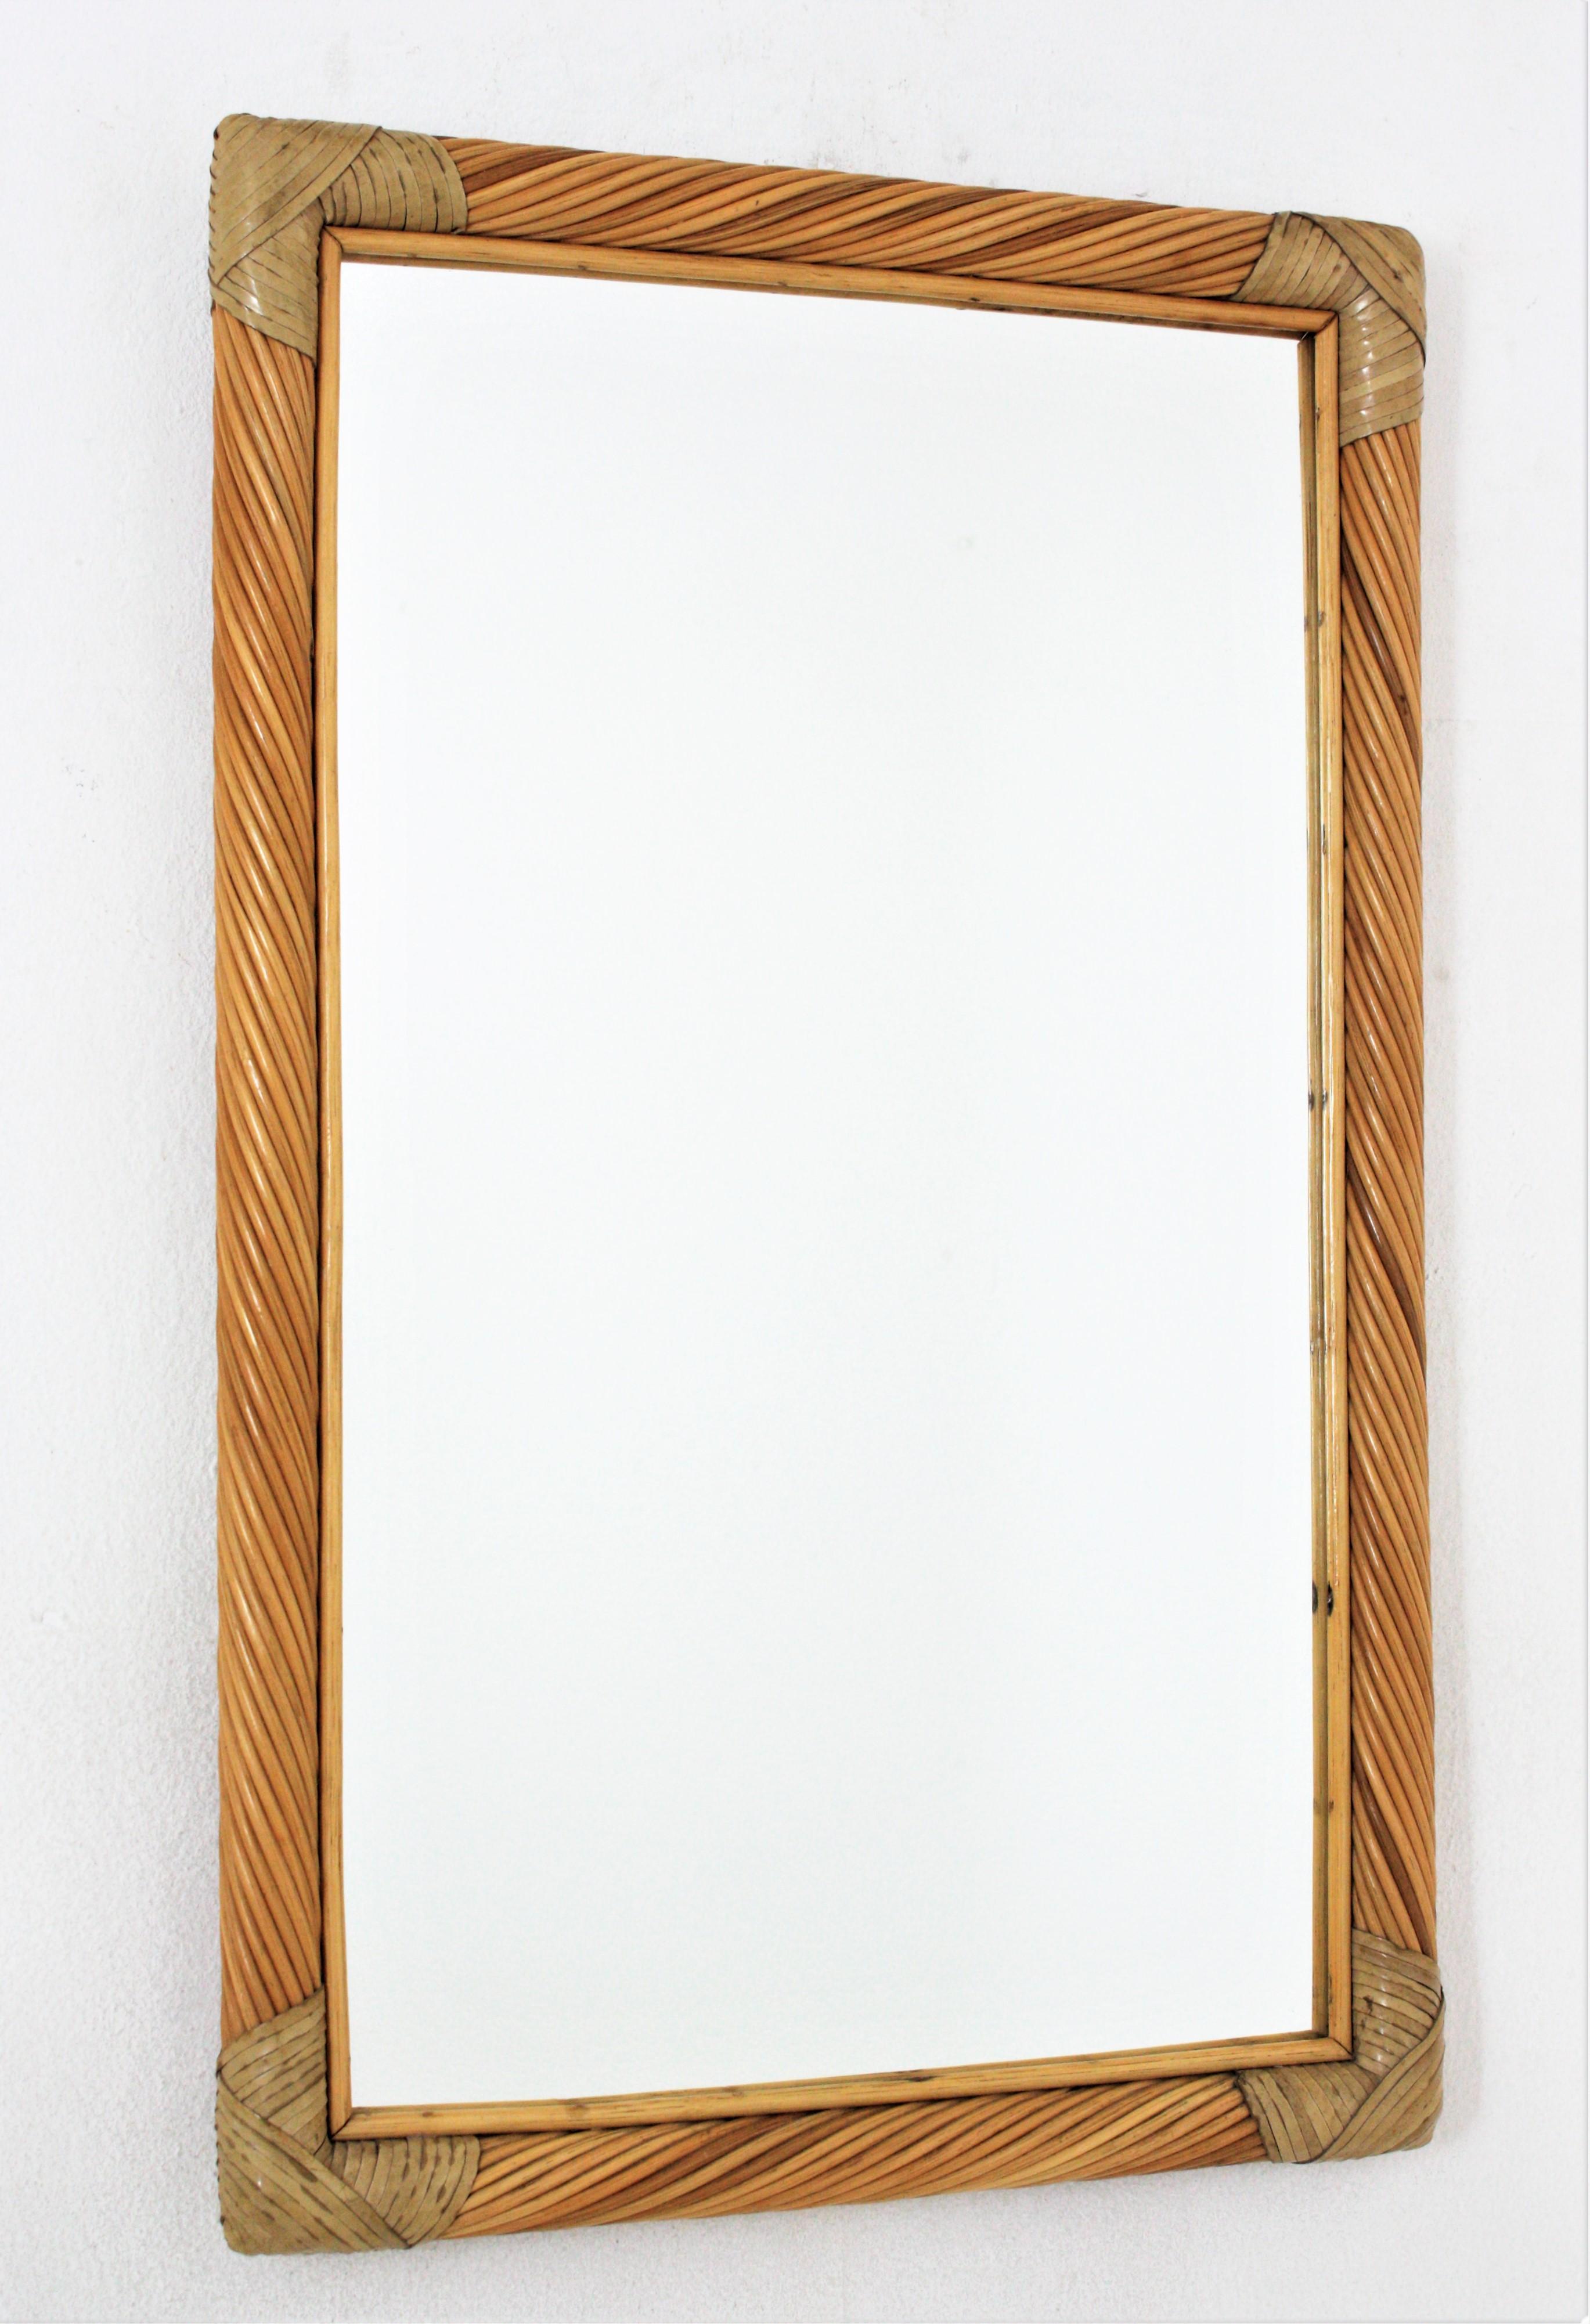 Rechteckiger Wandspiegel, Bleistiftrohr, Rattan, Leder, Italien, 1960er Jahre.
Auffälliger Spiegel aus Rattan. Der Rahmen hat eine schöne Konstruktion mit gedrehten Rattanstöcken aus Bleistiftrohr. Er hat an den Ecken mit Lederstreifen gebundene